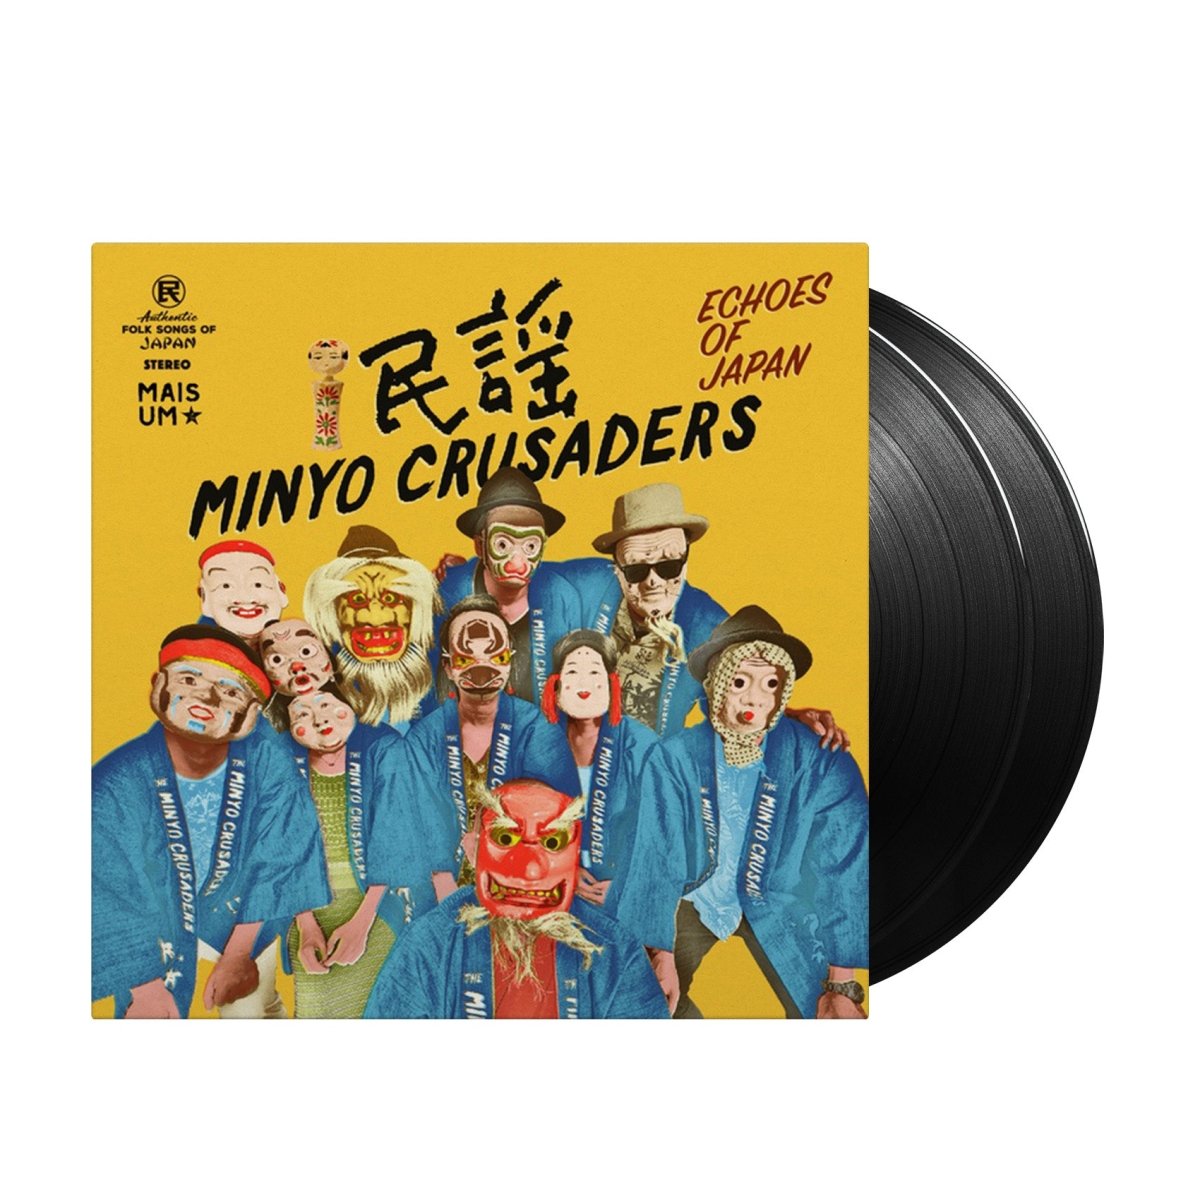 Minyo Crusaders - Echoes of Japan - Inner Ocean Records